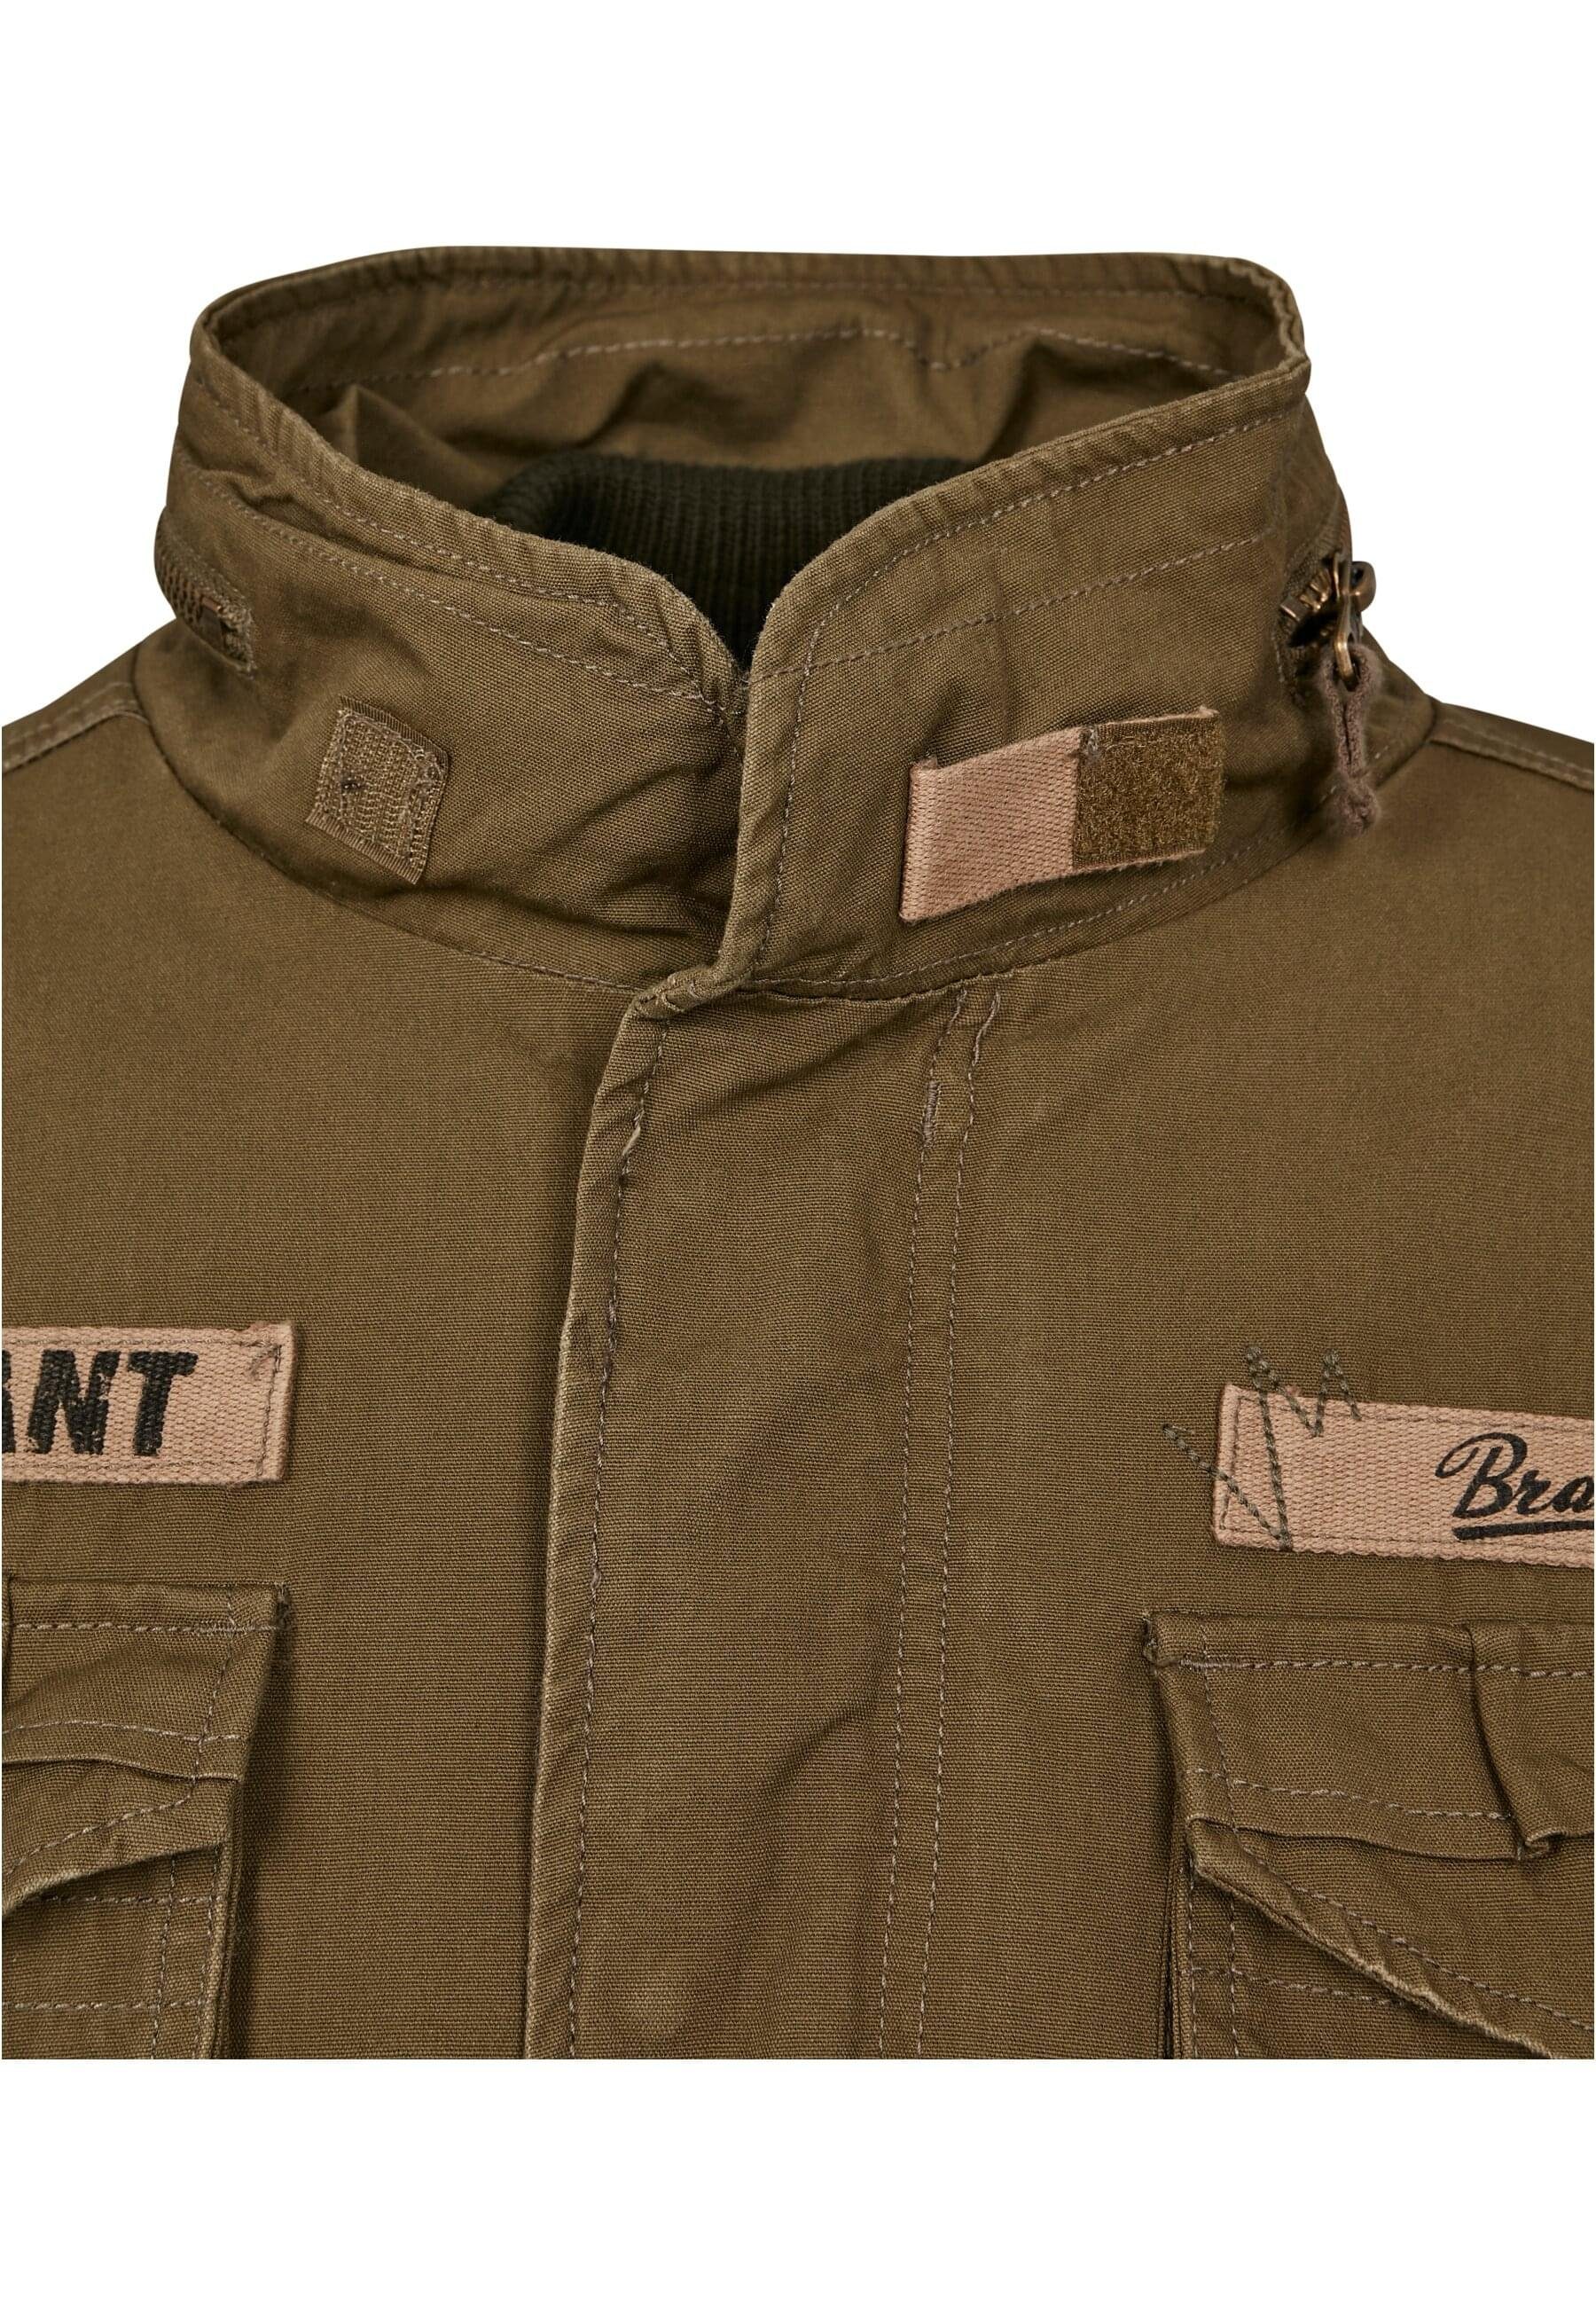 Herren Wintermantel Giant Jacket olive Brandit M-65